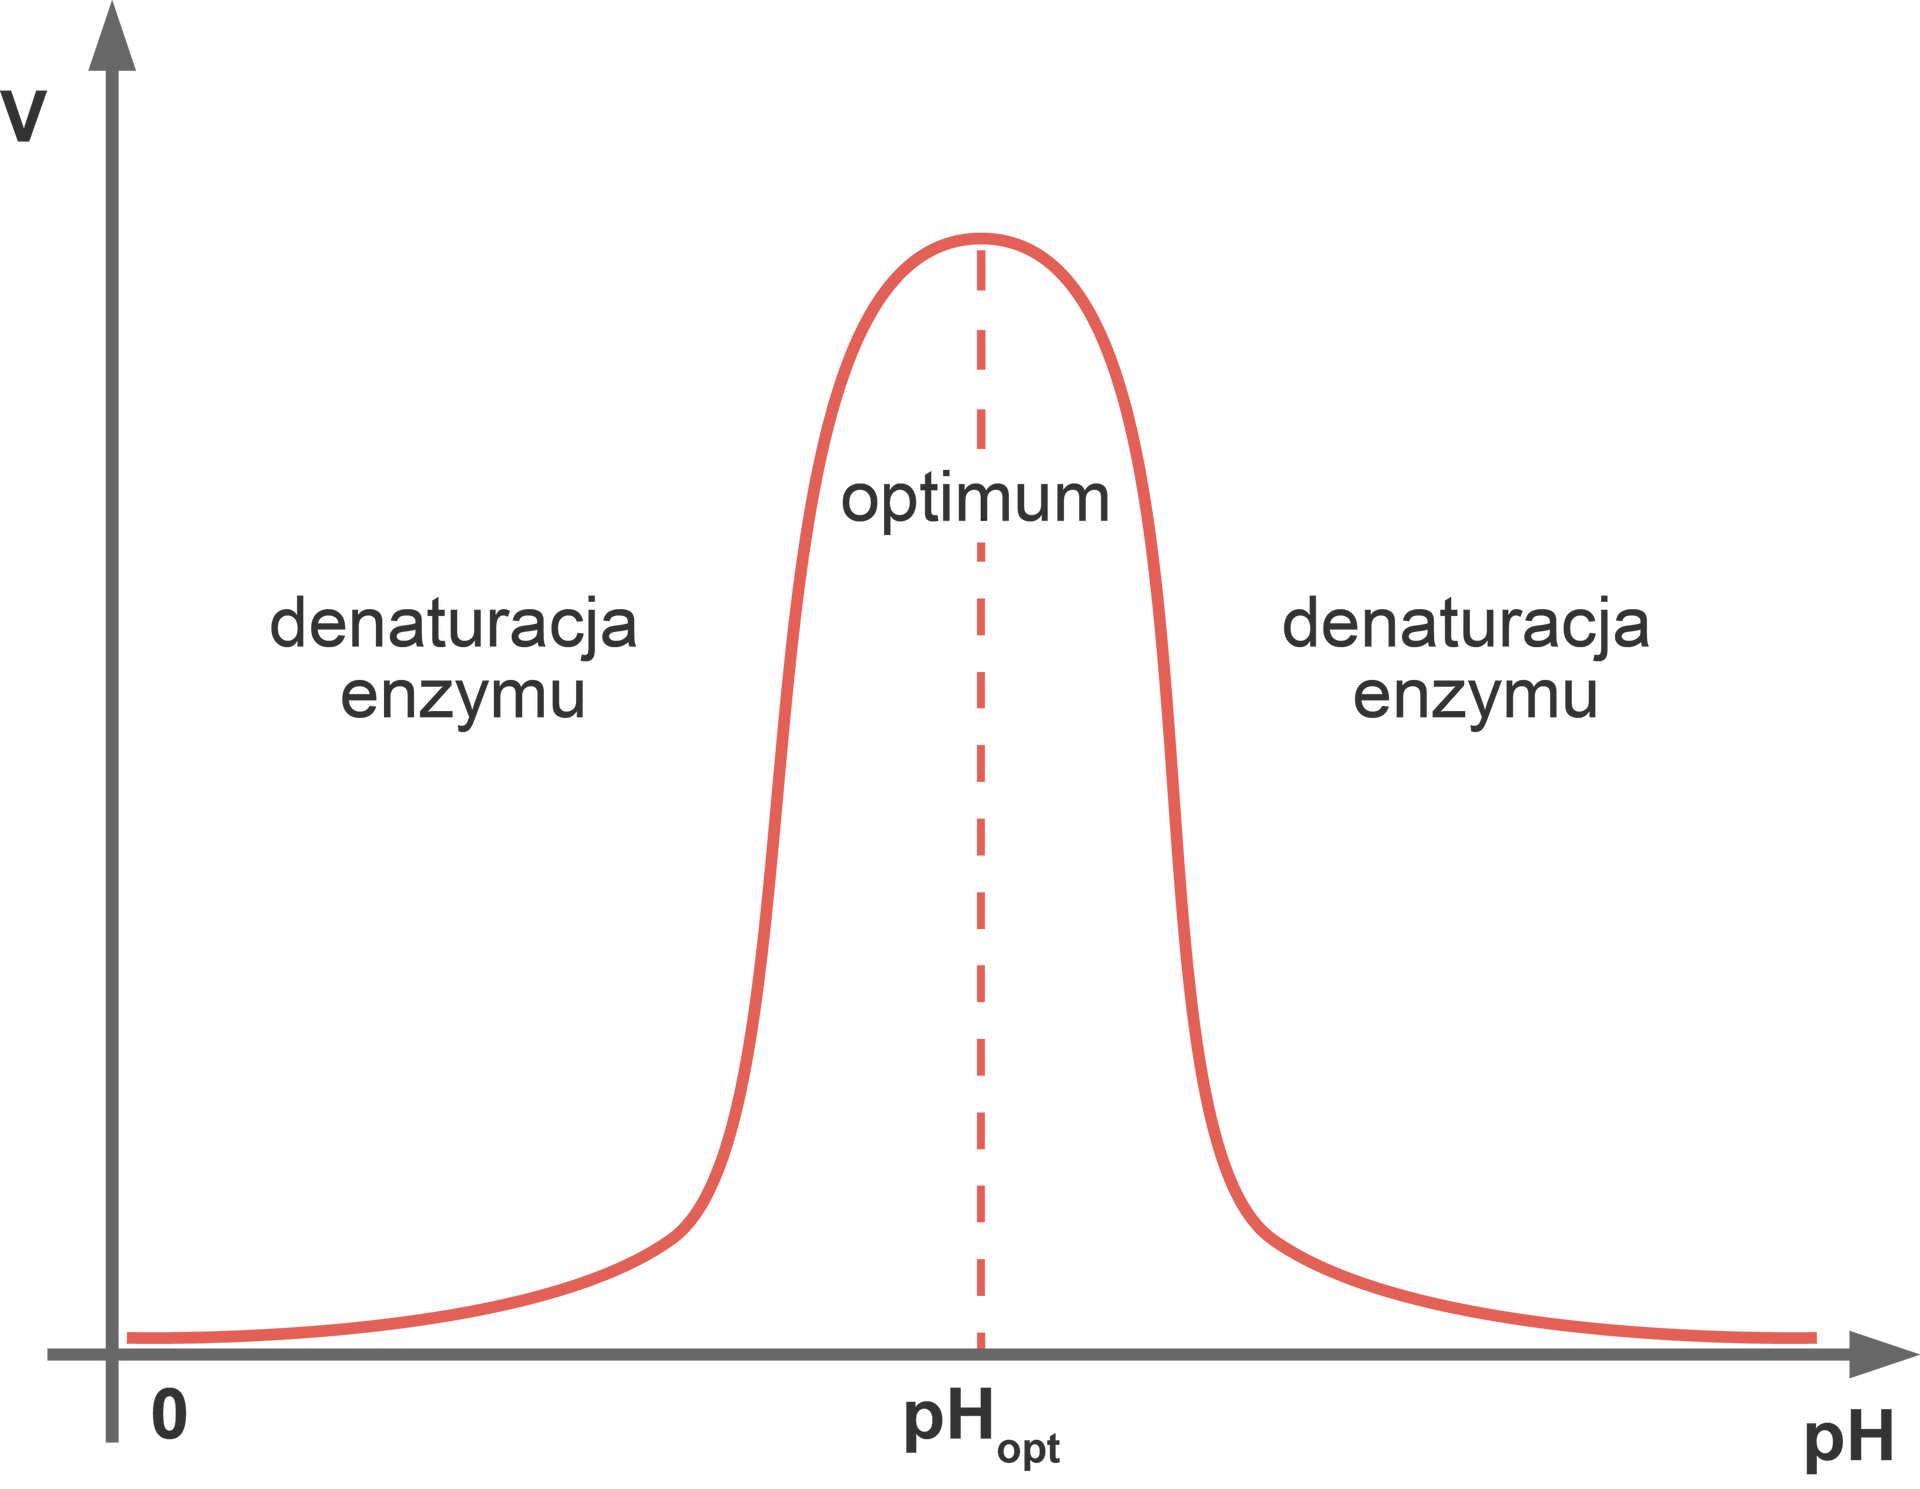 Wykres przedstawia wpływ pH na szybkość reakcji enzymatycznej. Od wartości 0 krzywa gwałtownie rośnie, po czym gwałtownie opada. Jest symetryczna. Po lewej i prawej stronie krzywej napis denaturacja enzymu. Maksimum wartości pH opisano jako optimum.  